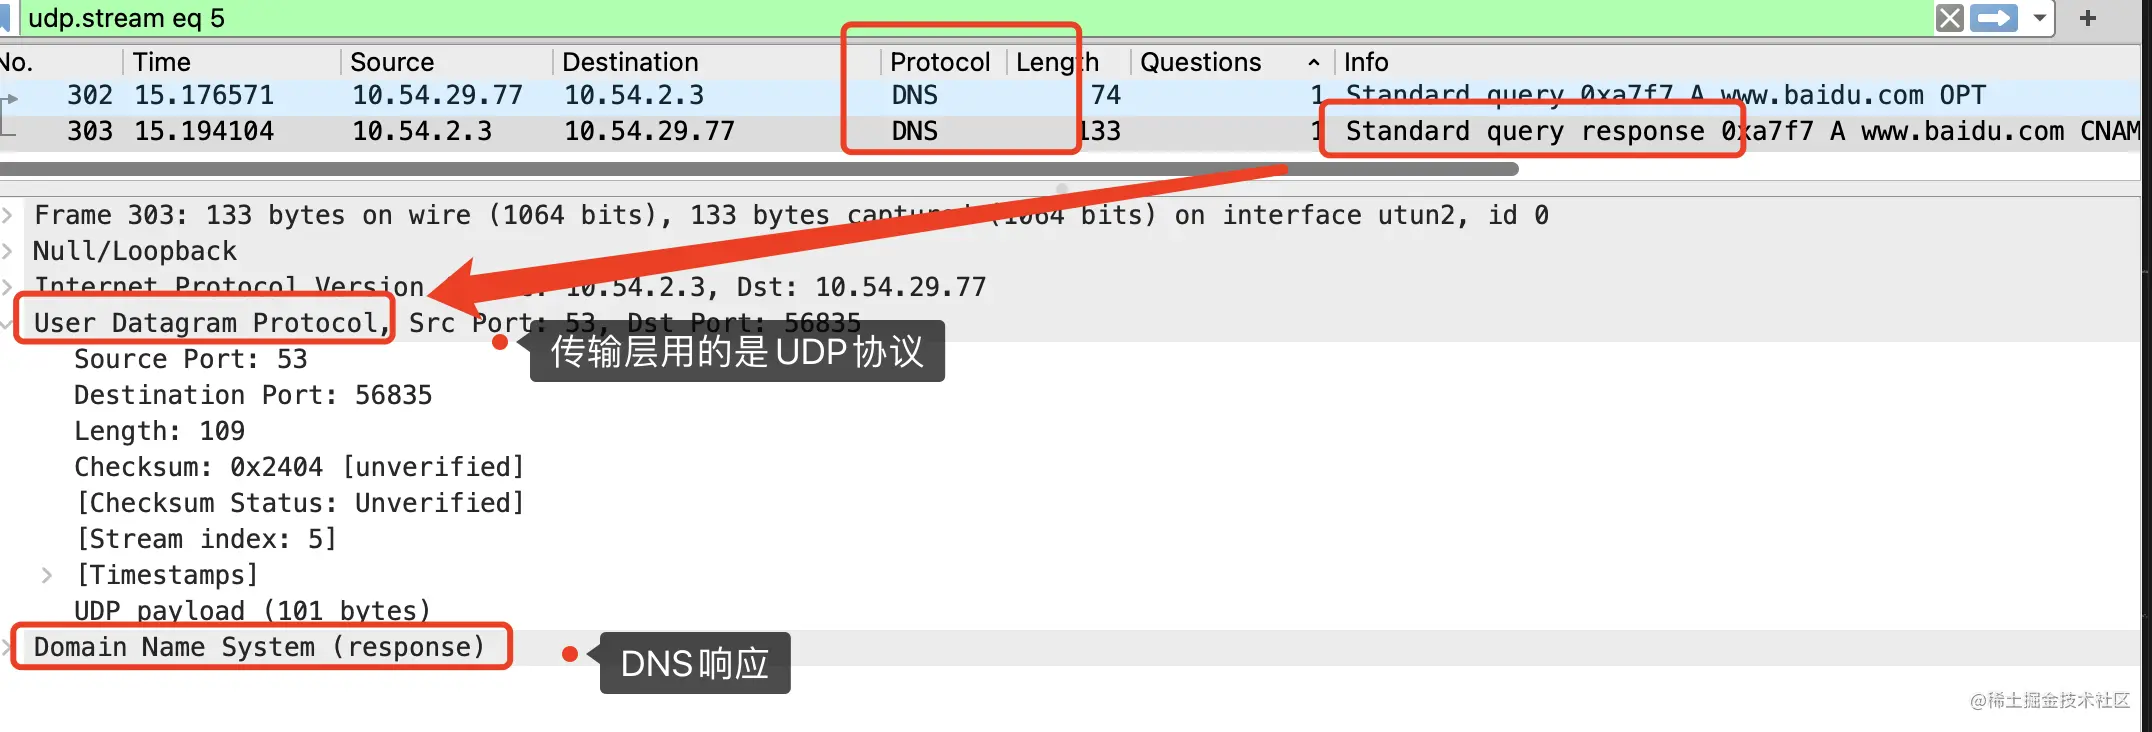 传输层使用了UDP协议